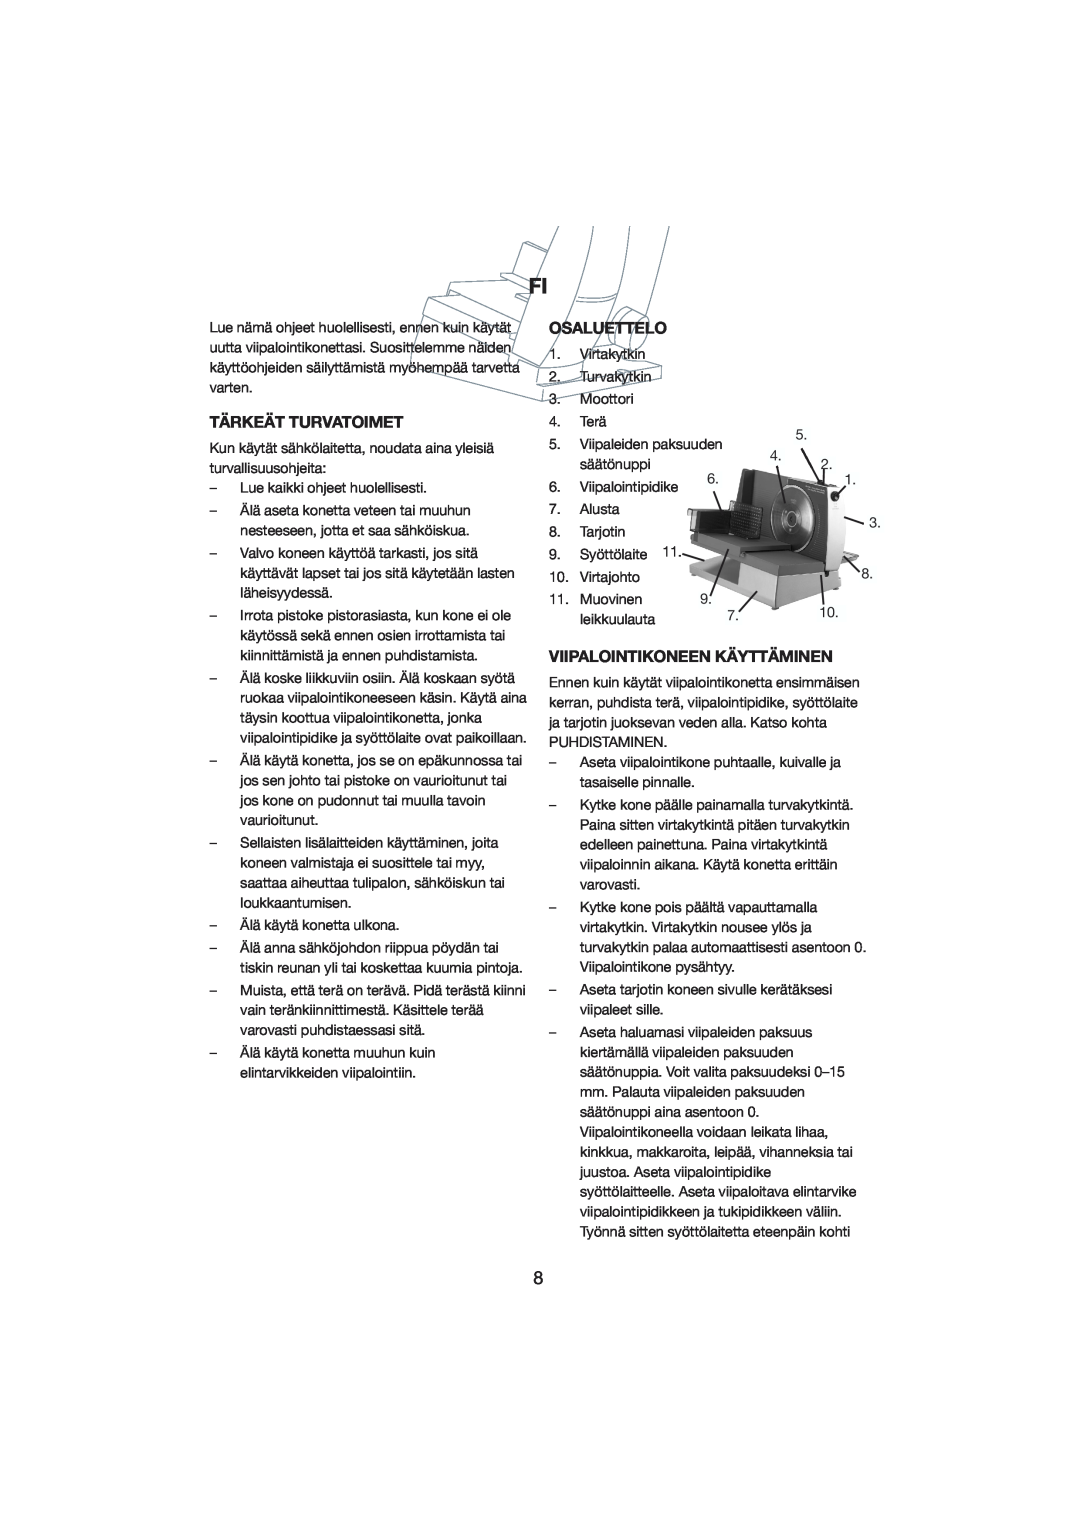 Melissa 246-006 manual Tärkeät Turvatoimet, Osaluettelo, Viipalointikoneen Käyttäminen 